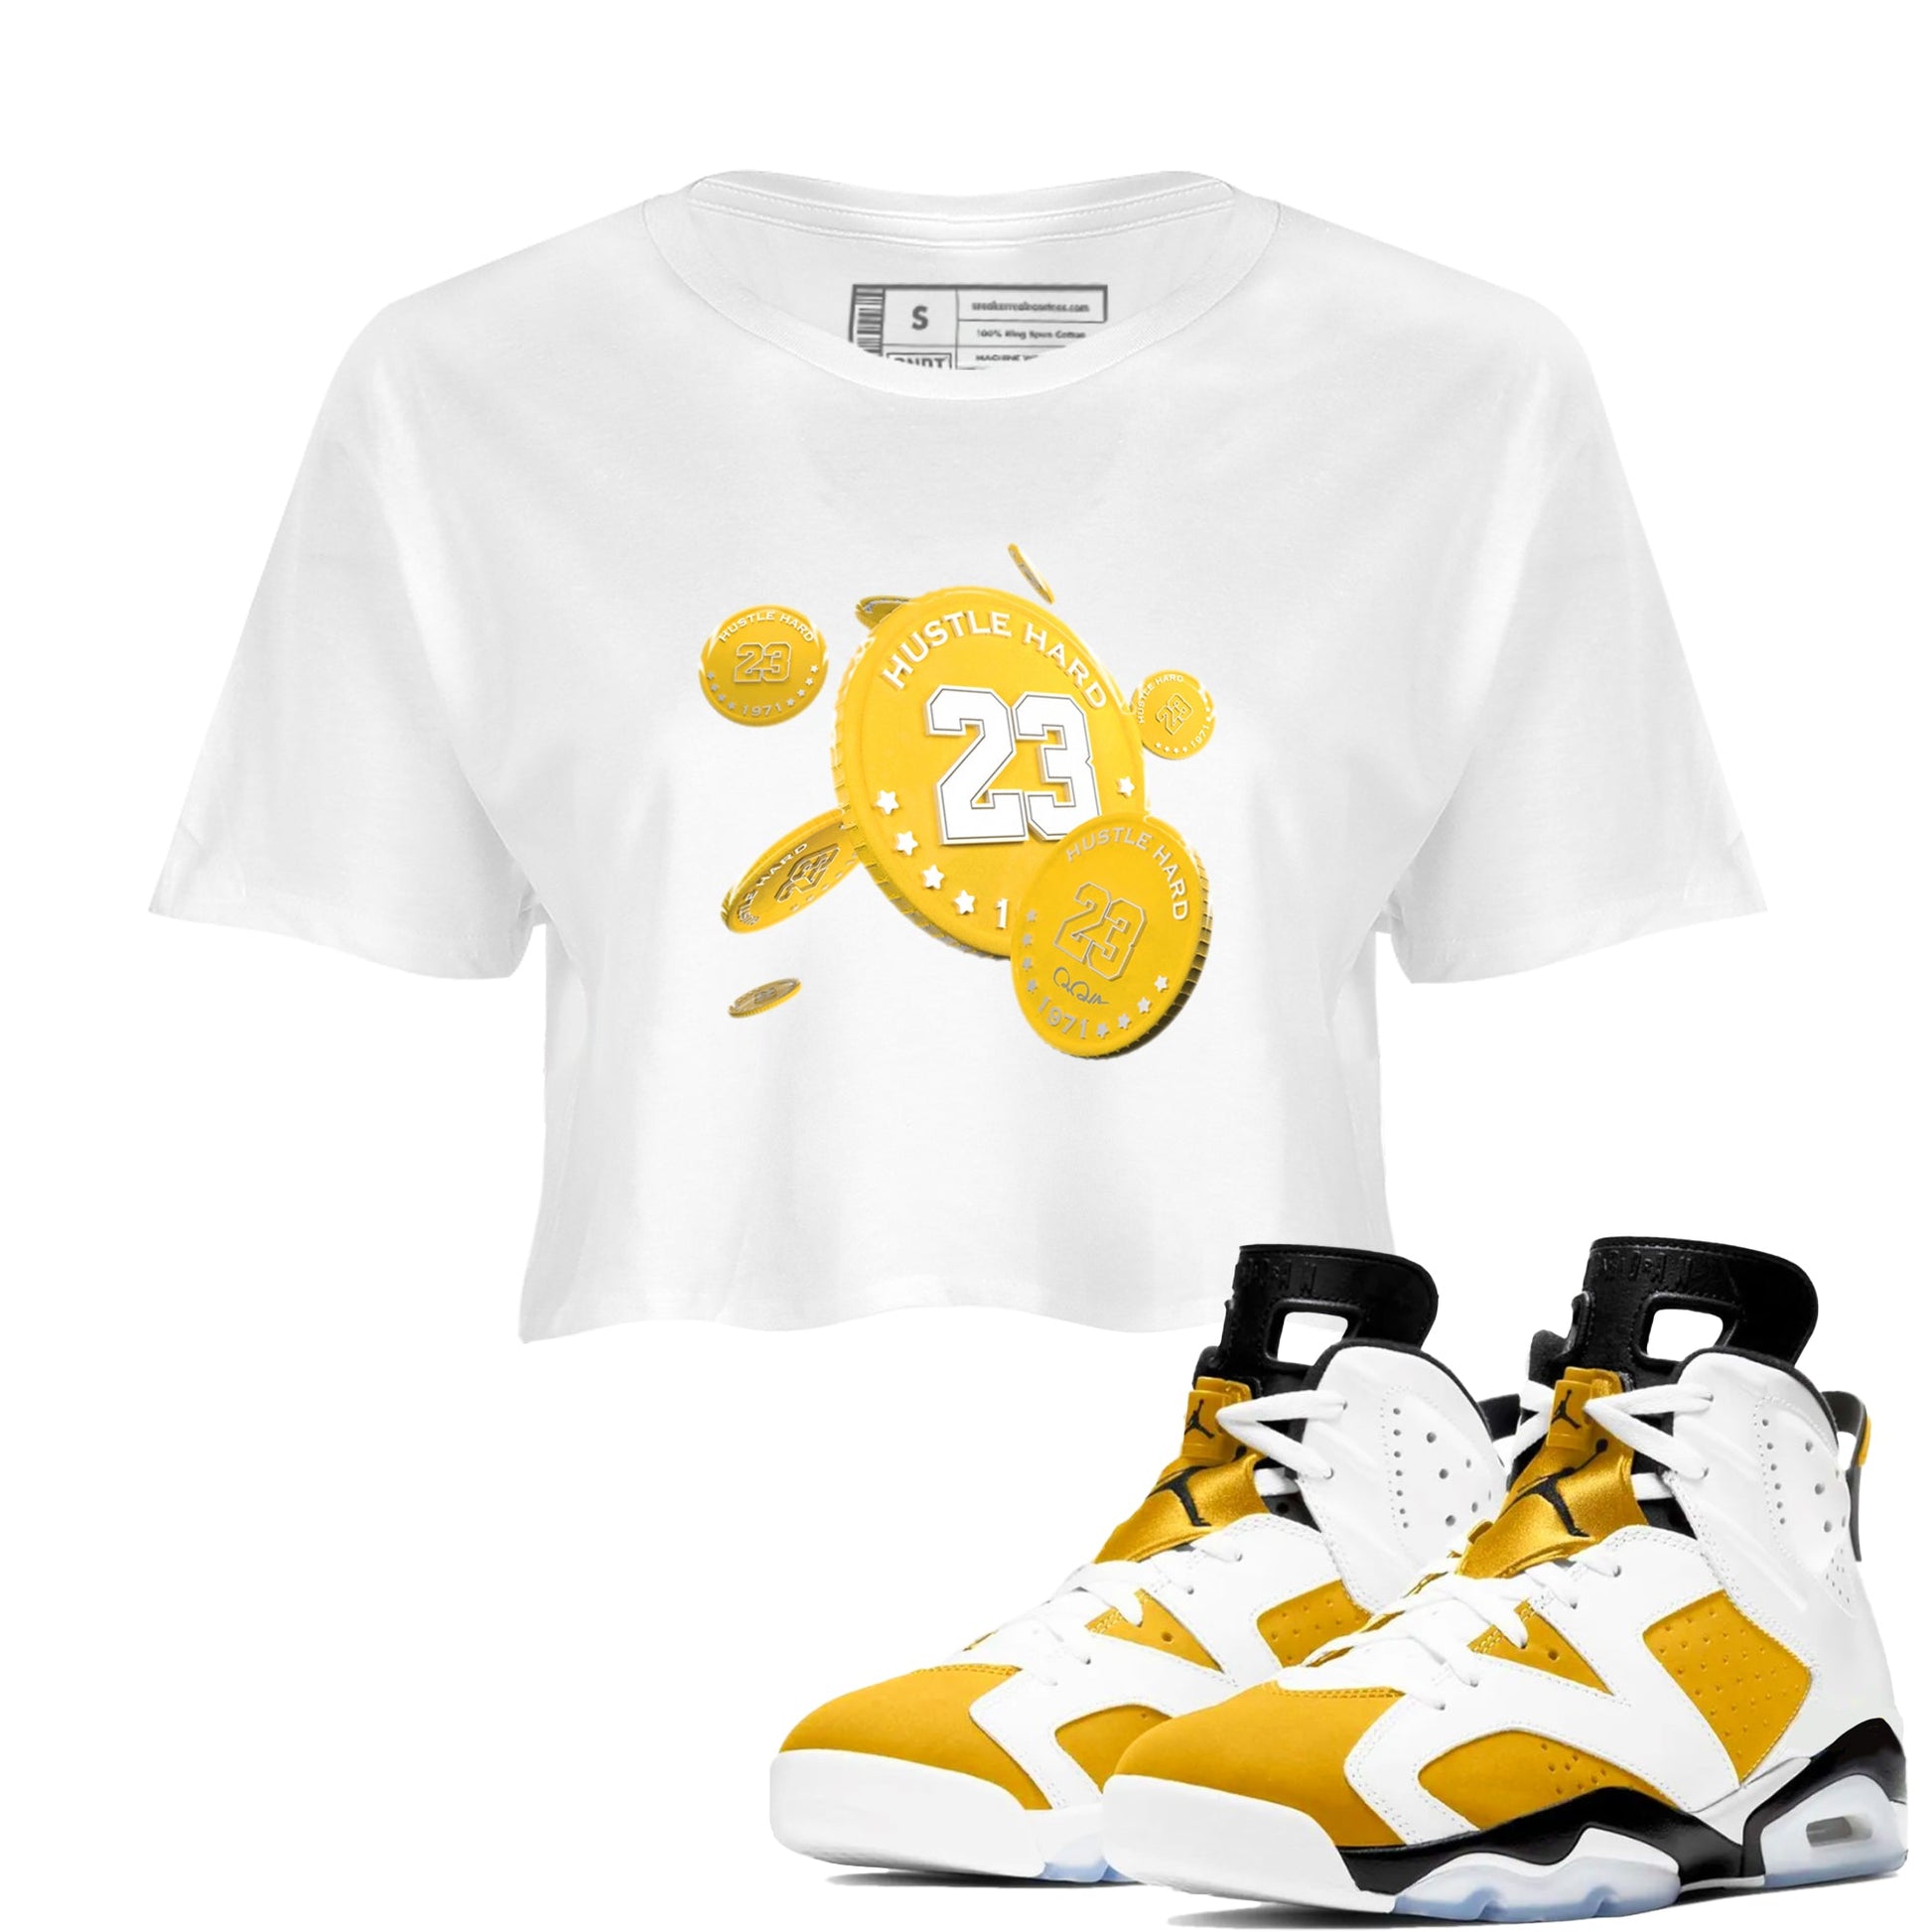 6s Yellow Ochre shirt to match jordans Coin Drop sneaker tees Air Jordan 6 Yellow Ochre SNRT Sneaker Release Tees White 1 Crop T-Shirt